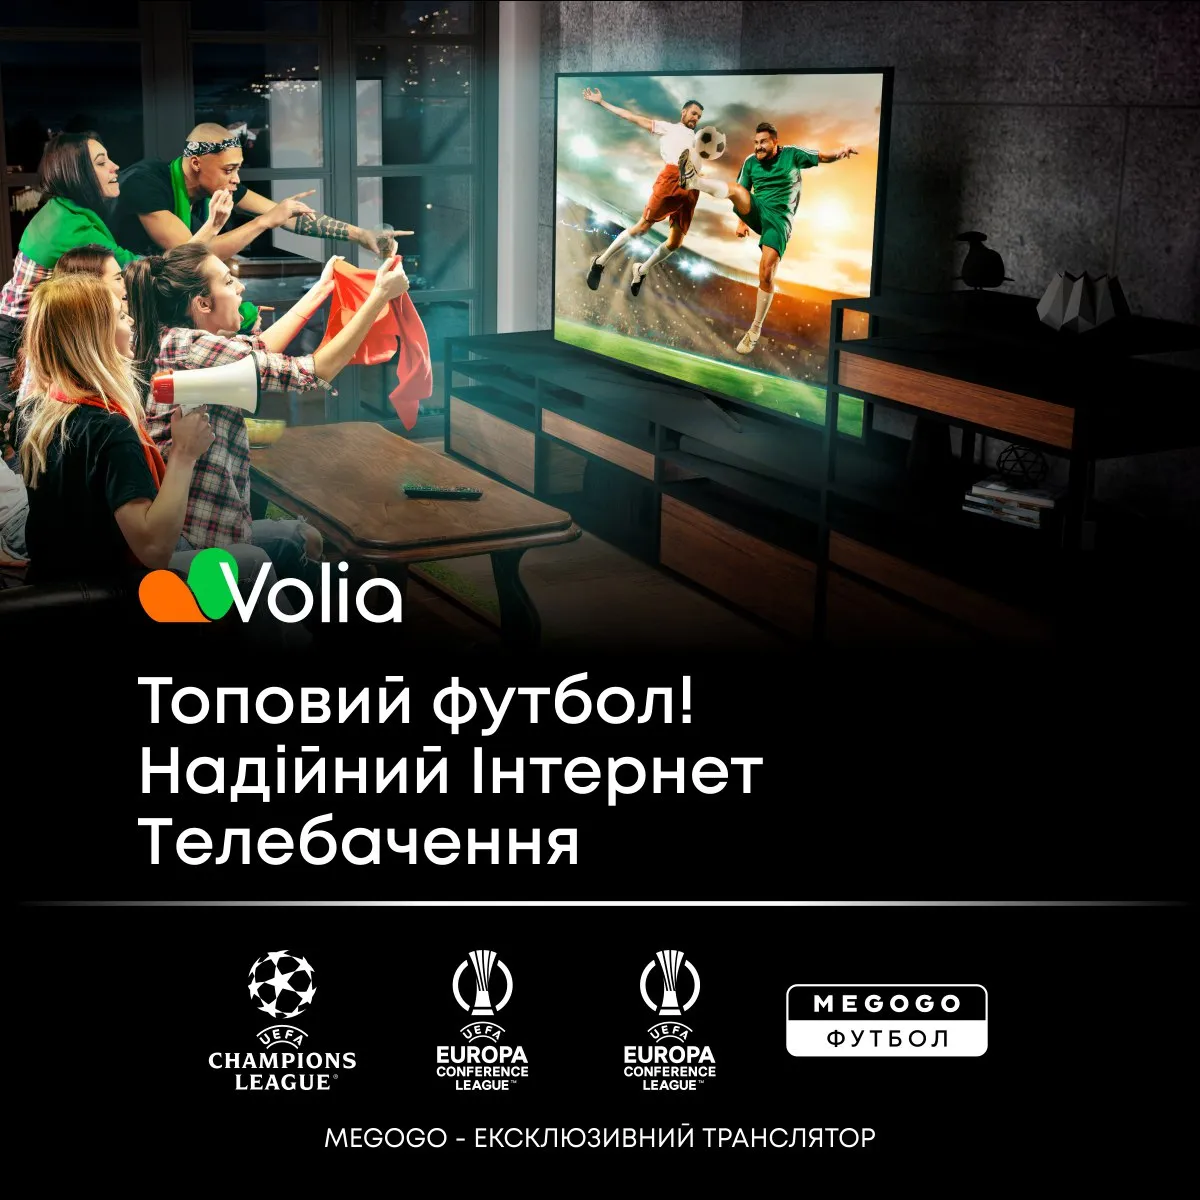 Volia TV є одним із двох майданчиків в Україні, що транслюють канали MEGOGO Футбол